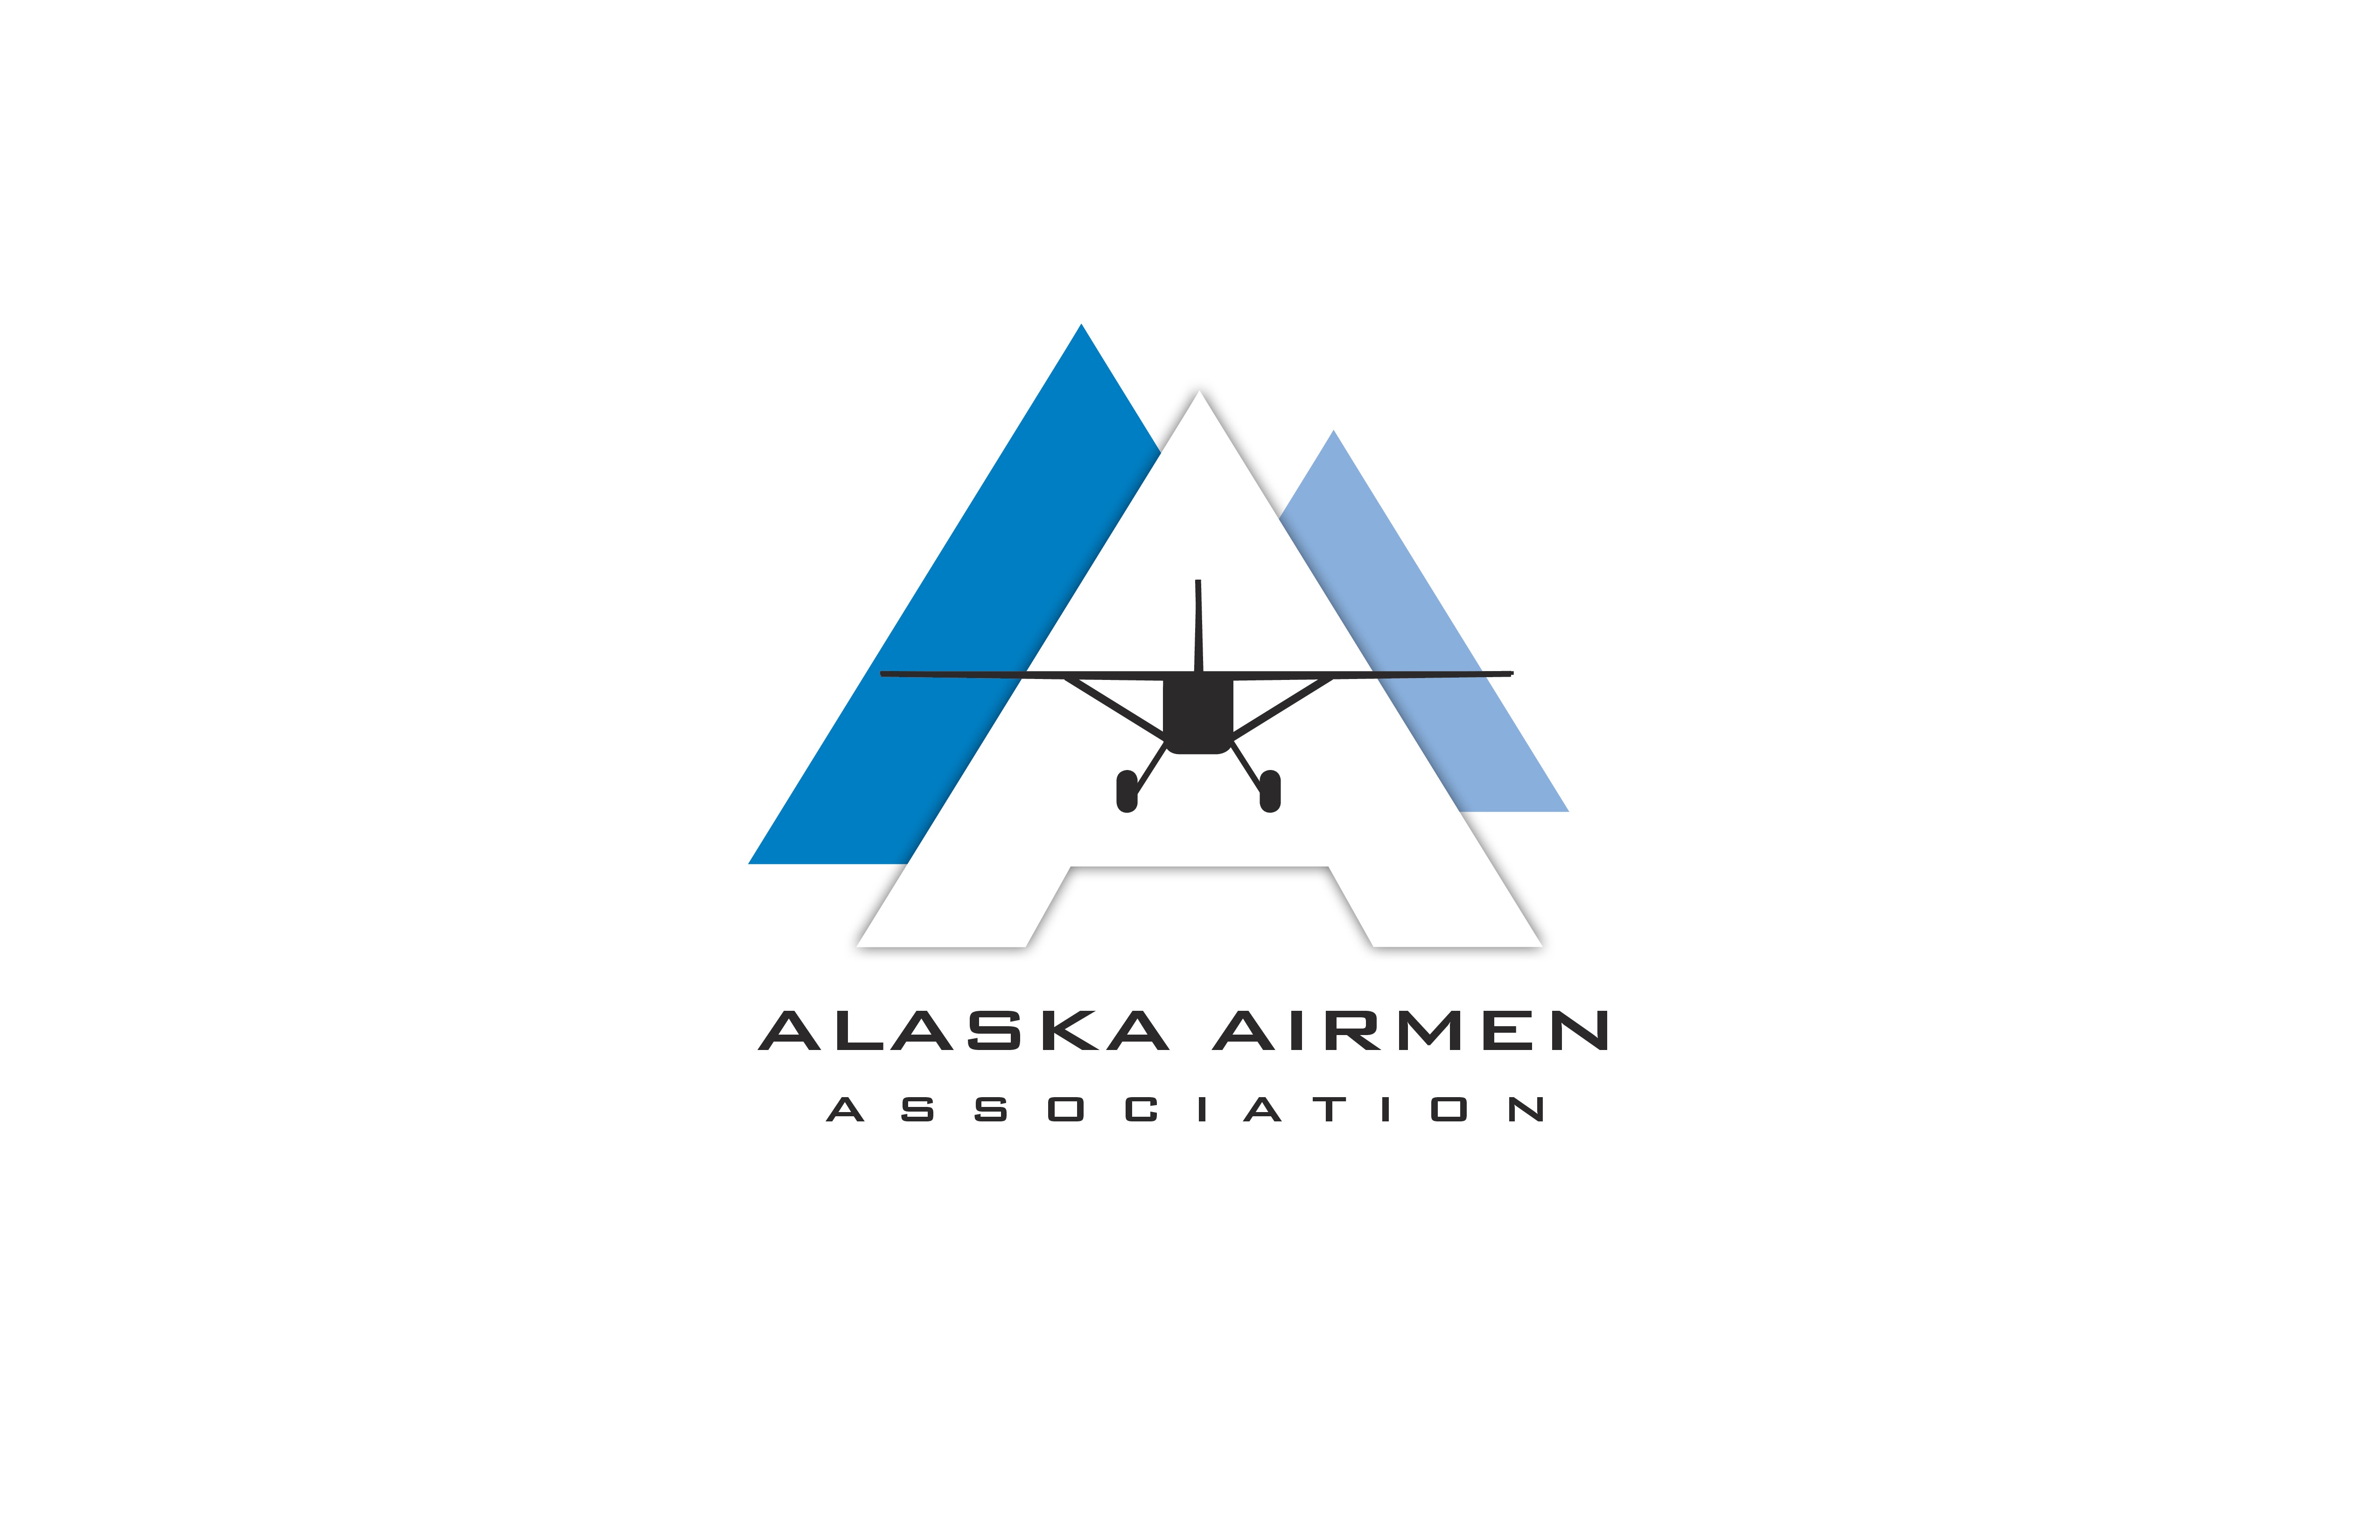 Alaska Airmen Association has 2,200 in Alaska and the Lower 48 promoting general aviation in Alaska.